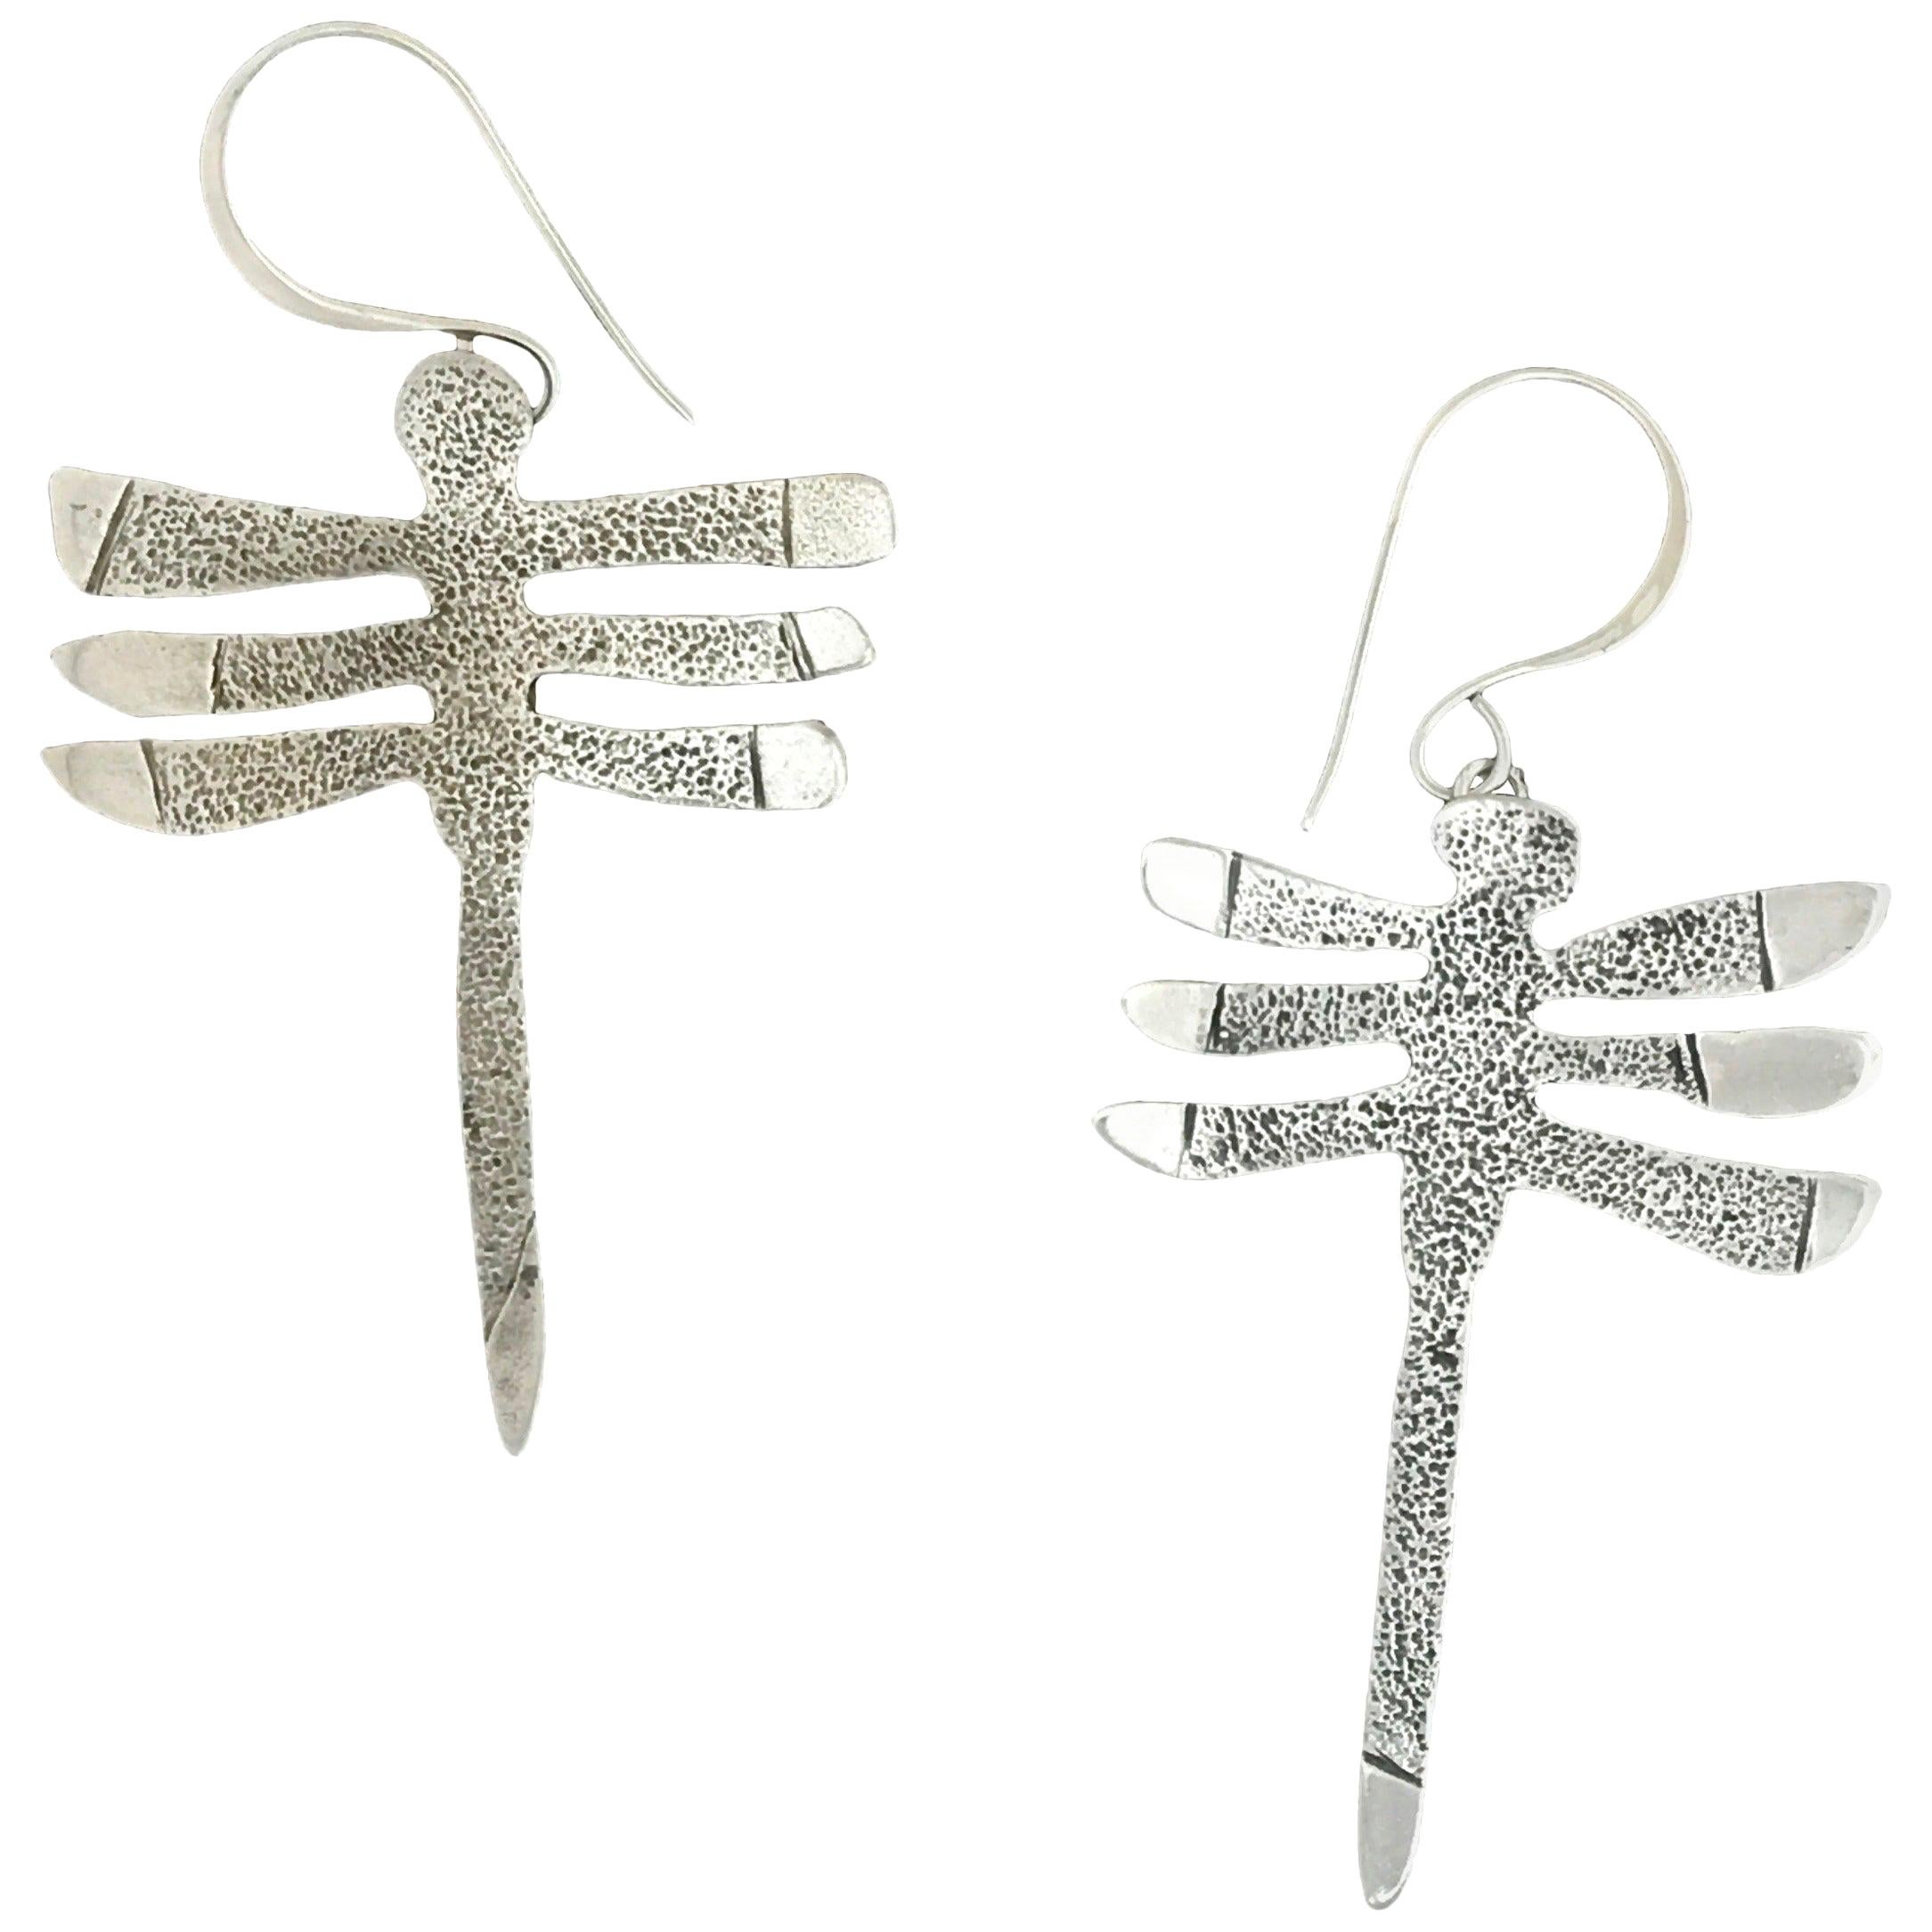 My Protectors, Melanie Yazzie, three winged dragonfly, earrings, silver, Navajo 